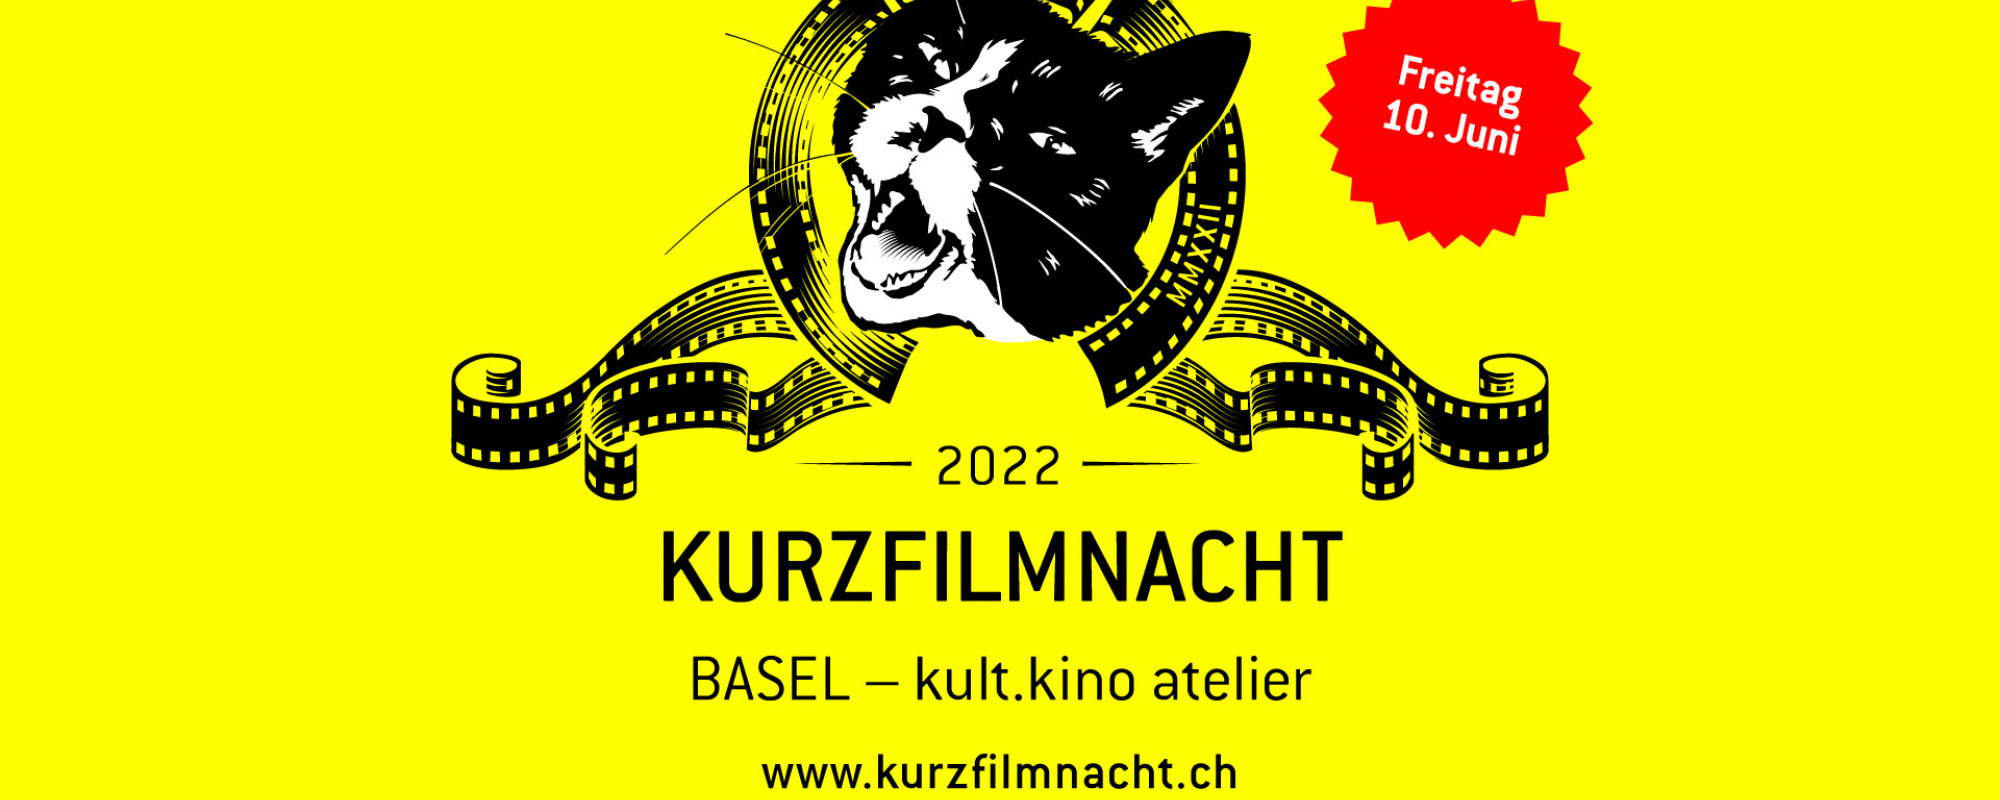 Kurzfilmnacht 2022